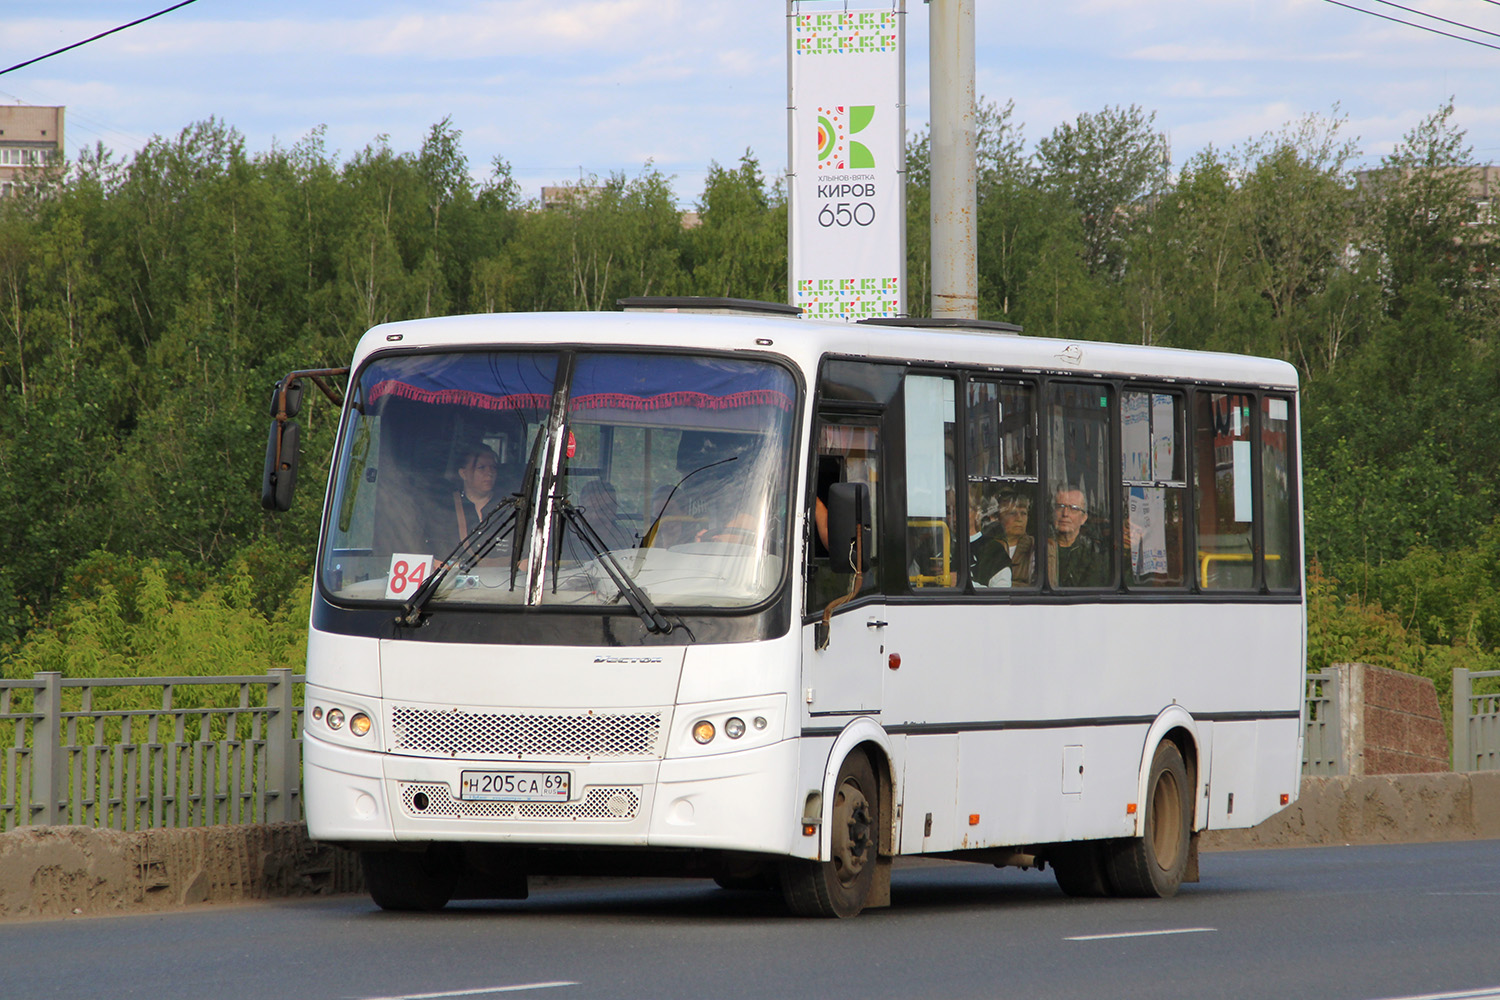 Kirov region, PAZ-320412-04 "Vector" № Н 205 СА 69